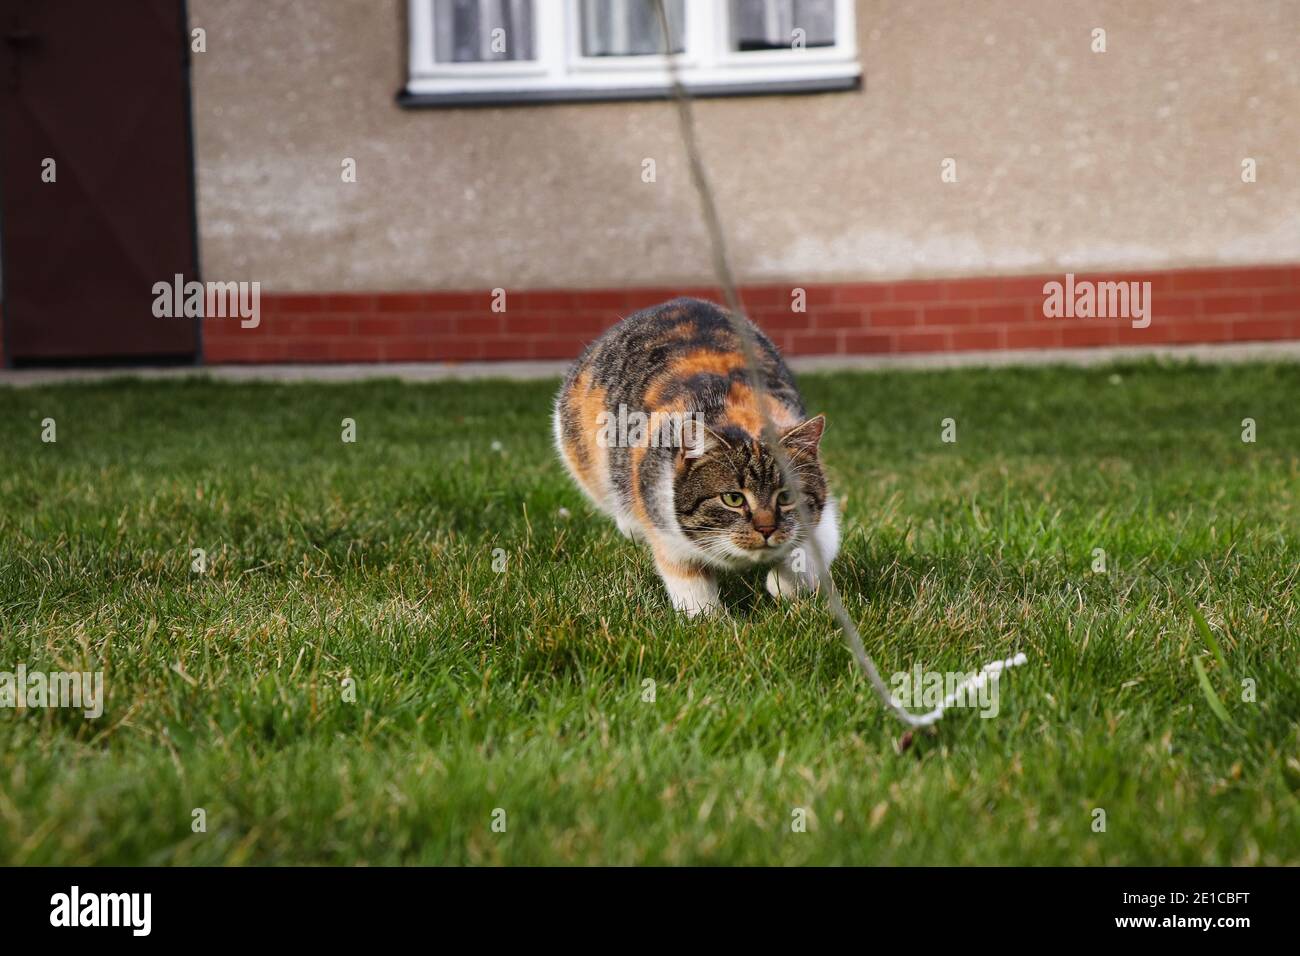 Junge Katze jagt nach der Schnur, um sie so schnell wie möglich zu fangen und in sie zu beißen. Felis catus domesticus springt auf einen Faden Stockfoto